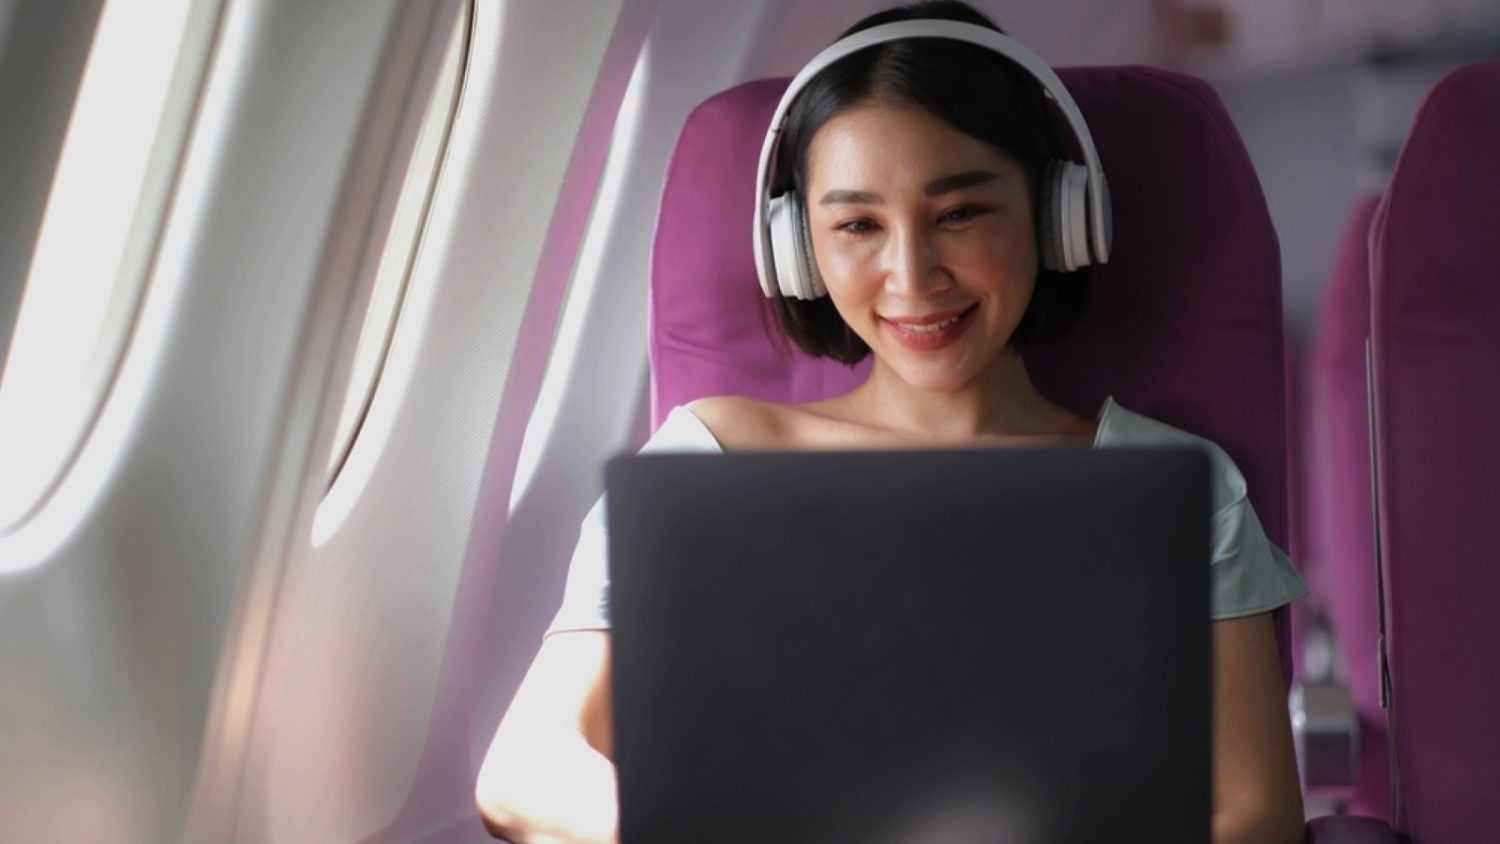 Woman in flight using laptop